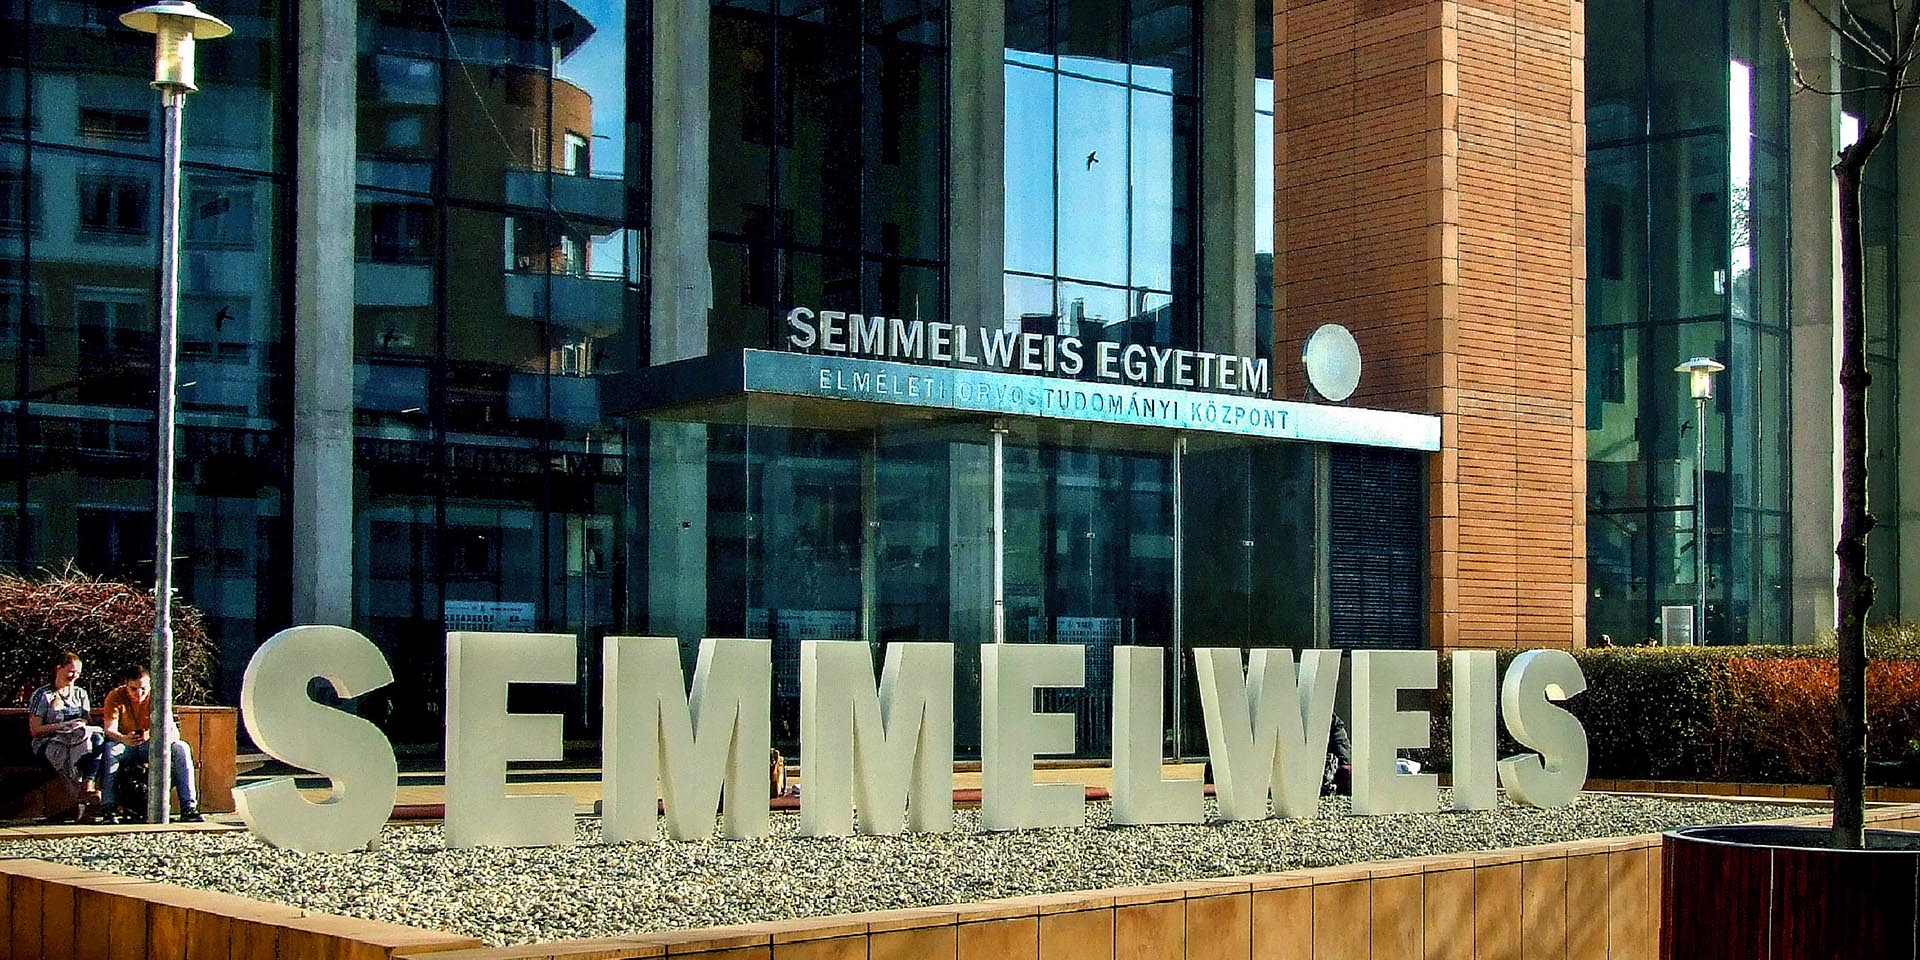 Délután lejár a határidő, alig pár órájuk van a Semmelweis Egyetem hallgatóinak